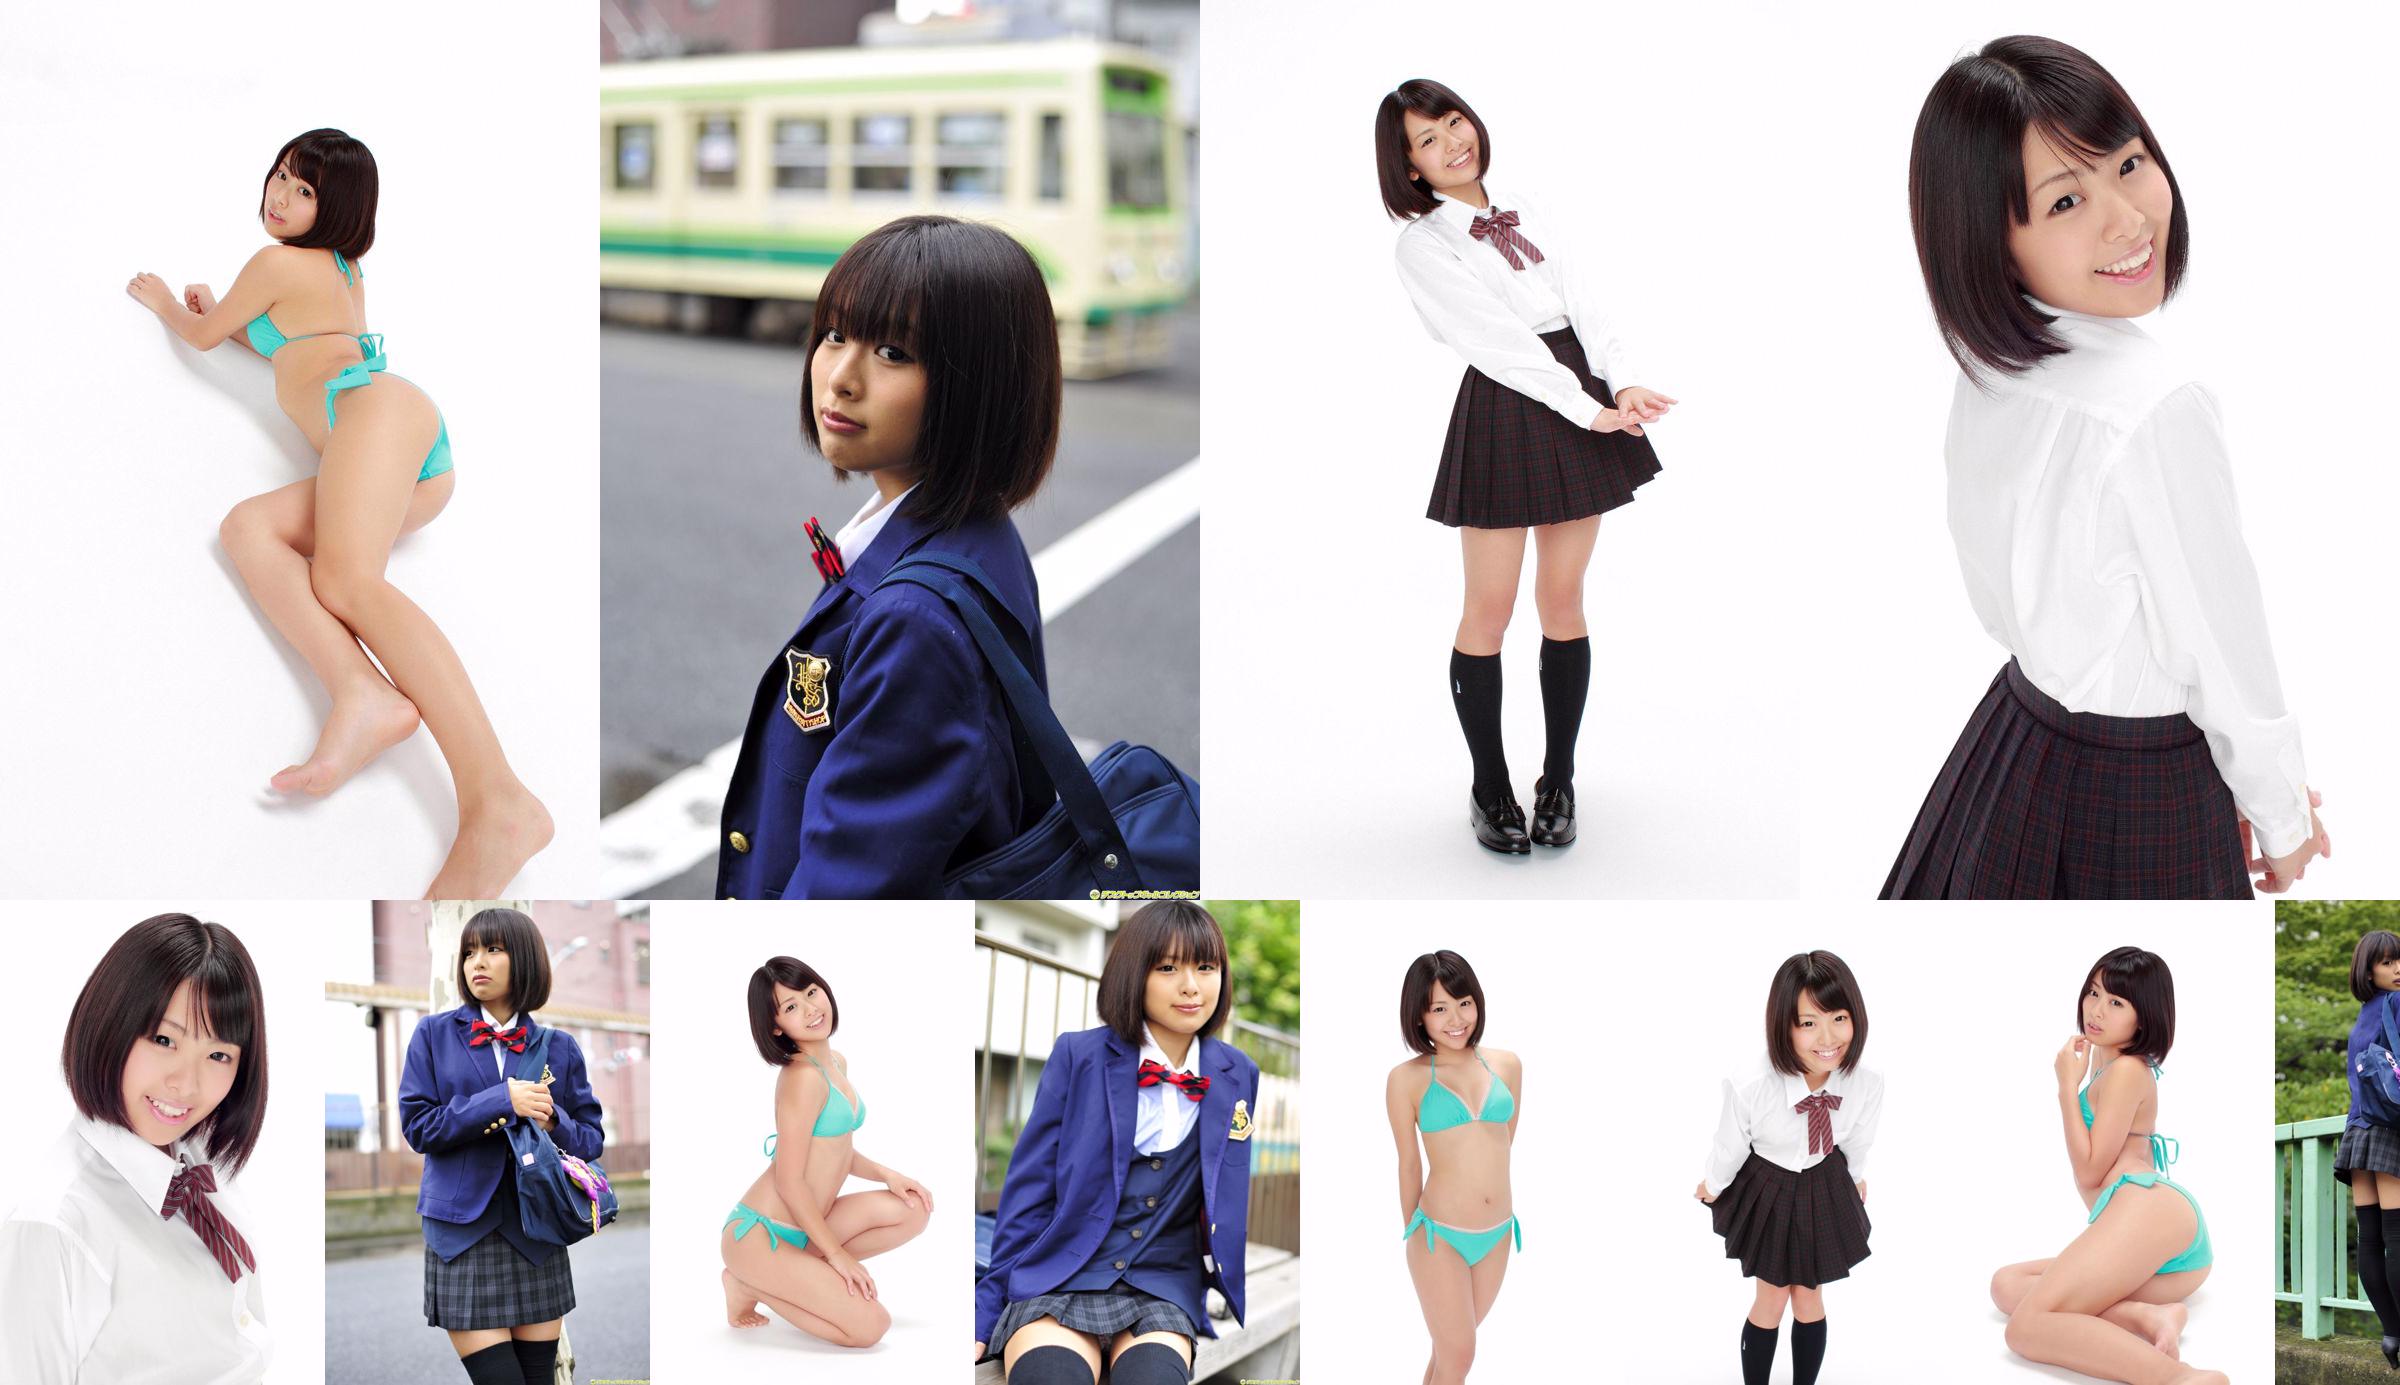 [DGC] NO.992 Ran Sakai Ran Sakai Uniform Beautiful Girl Heaven No.27c1f1 Page 5